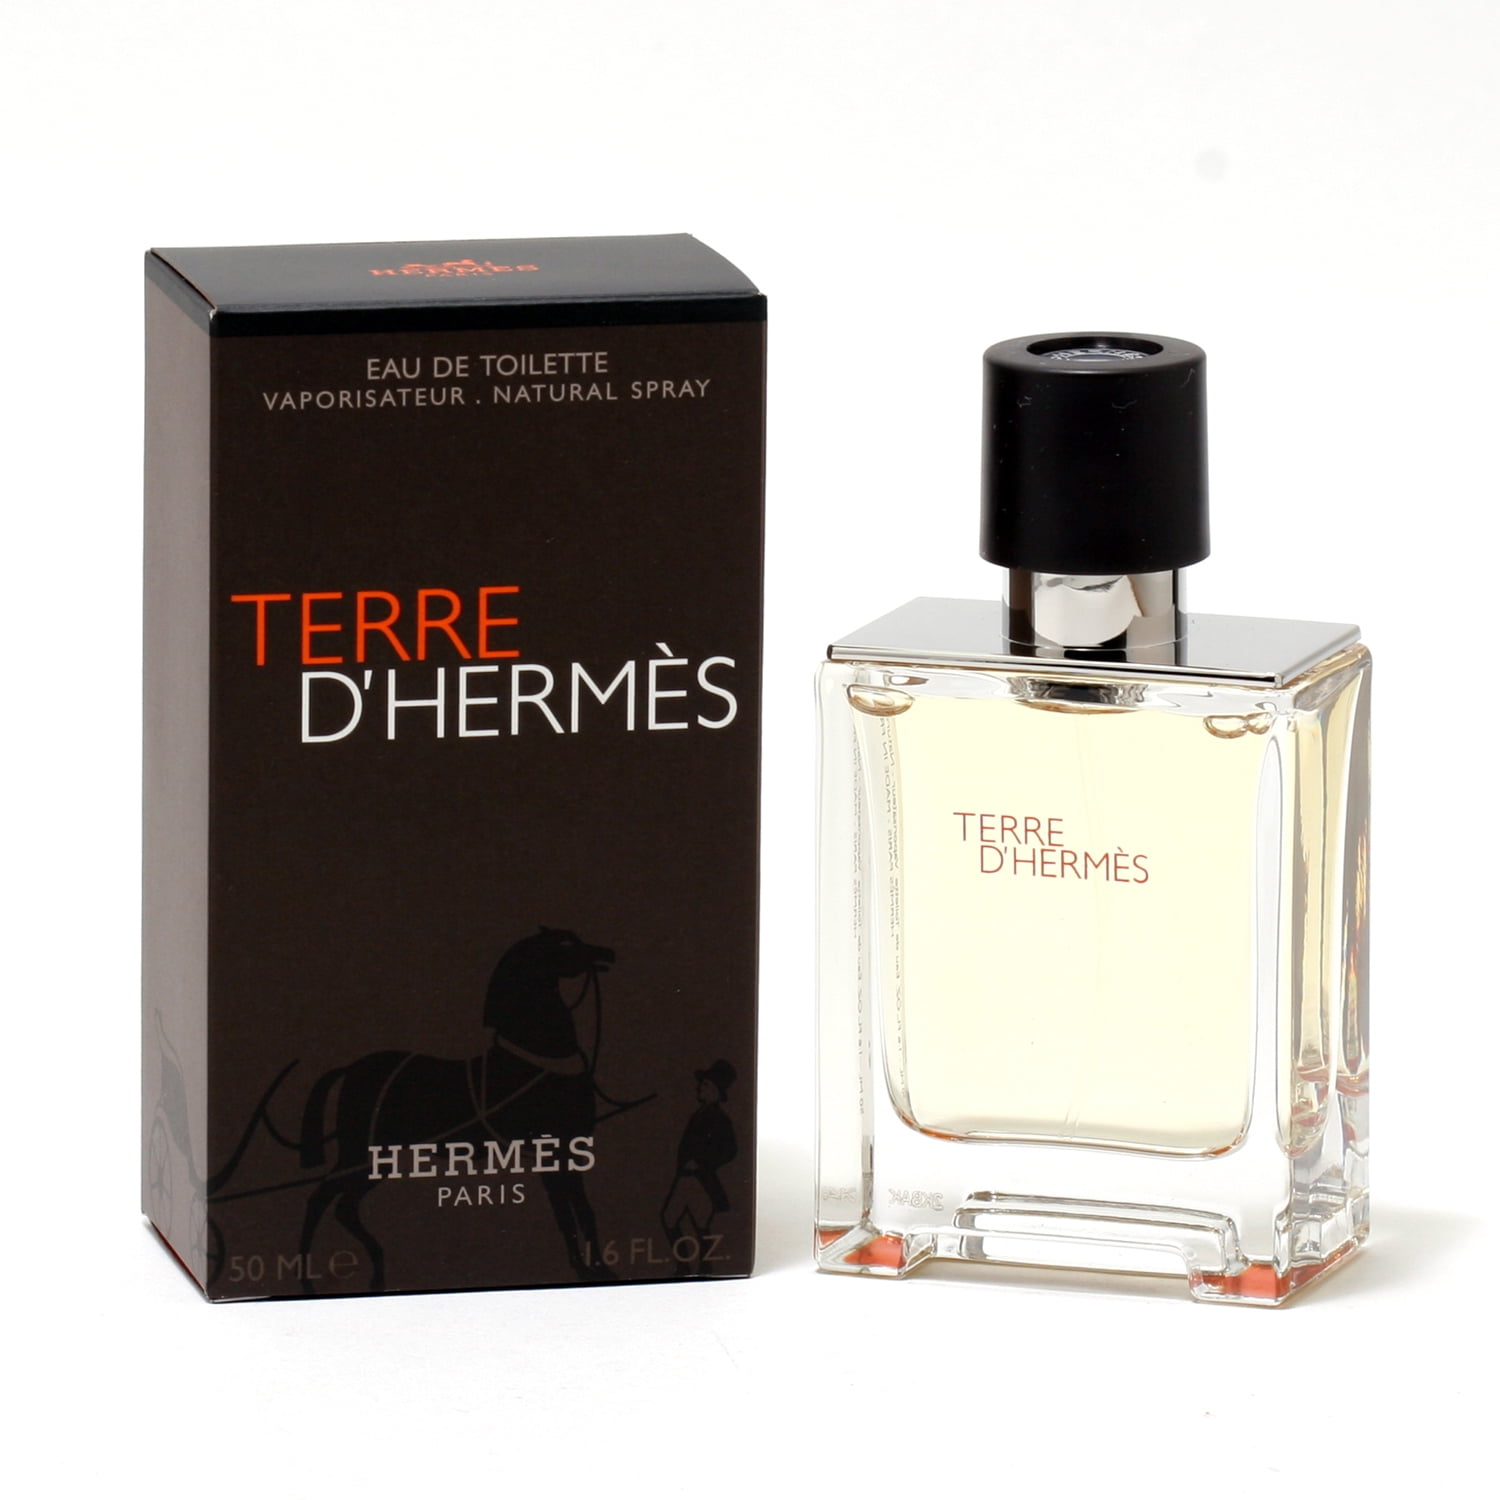 Туалетная вода terre. Hermes "Terre d`Hermes " 100 ml. Hermes Terre d'Hermes pour homme туалетная вода 100мл. Hermes Terre d'Hermes EDT M. Terre d'Hermes EDT for men 100 ml.